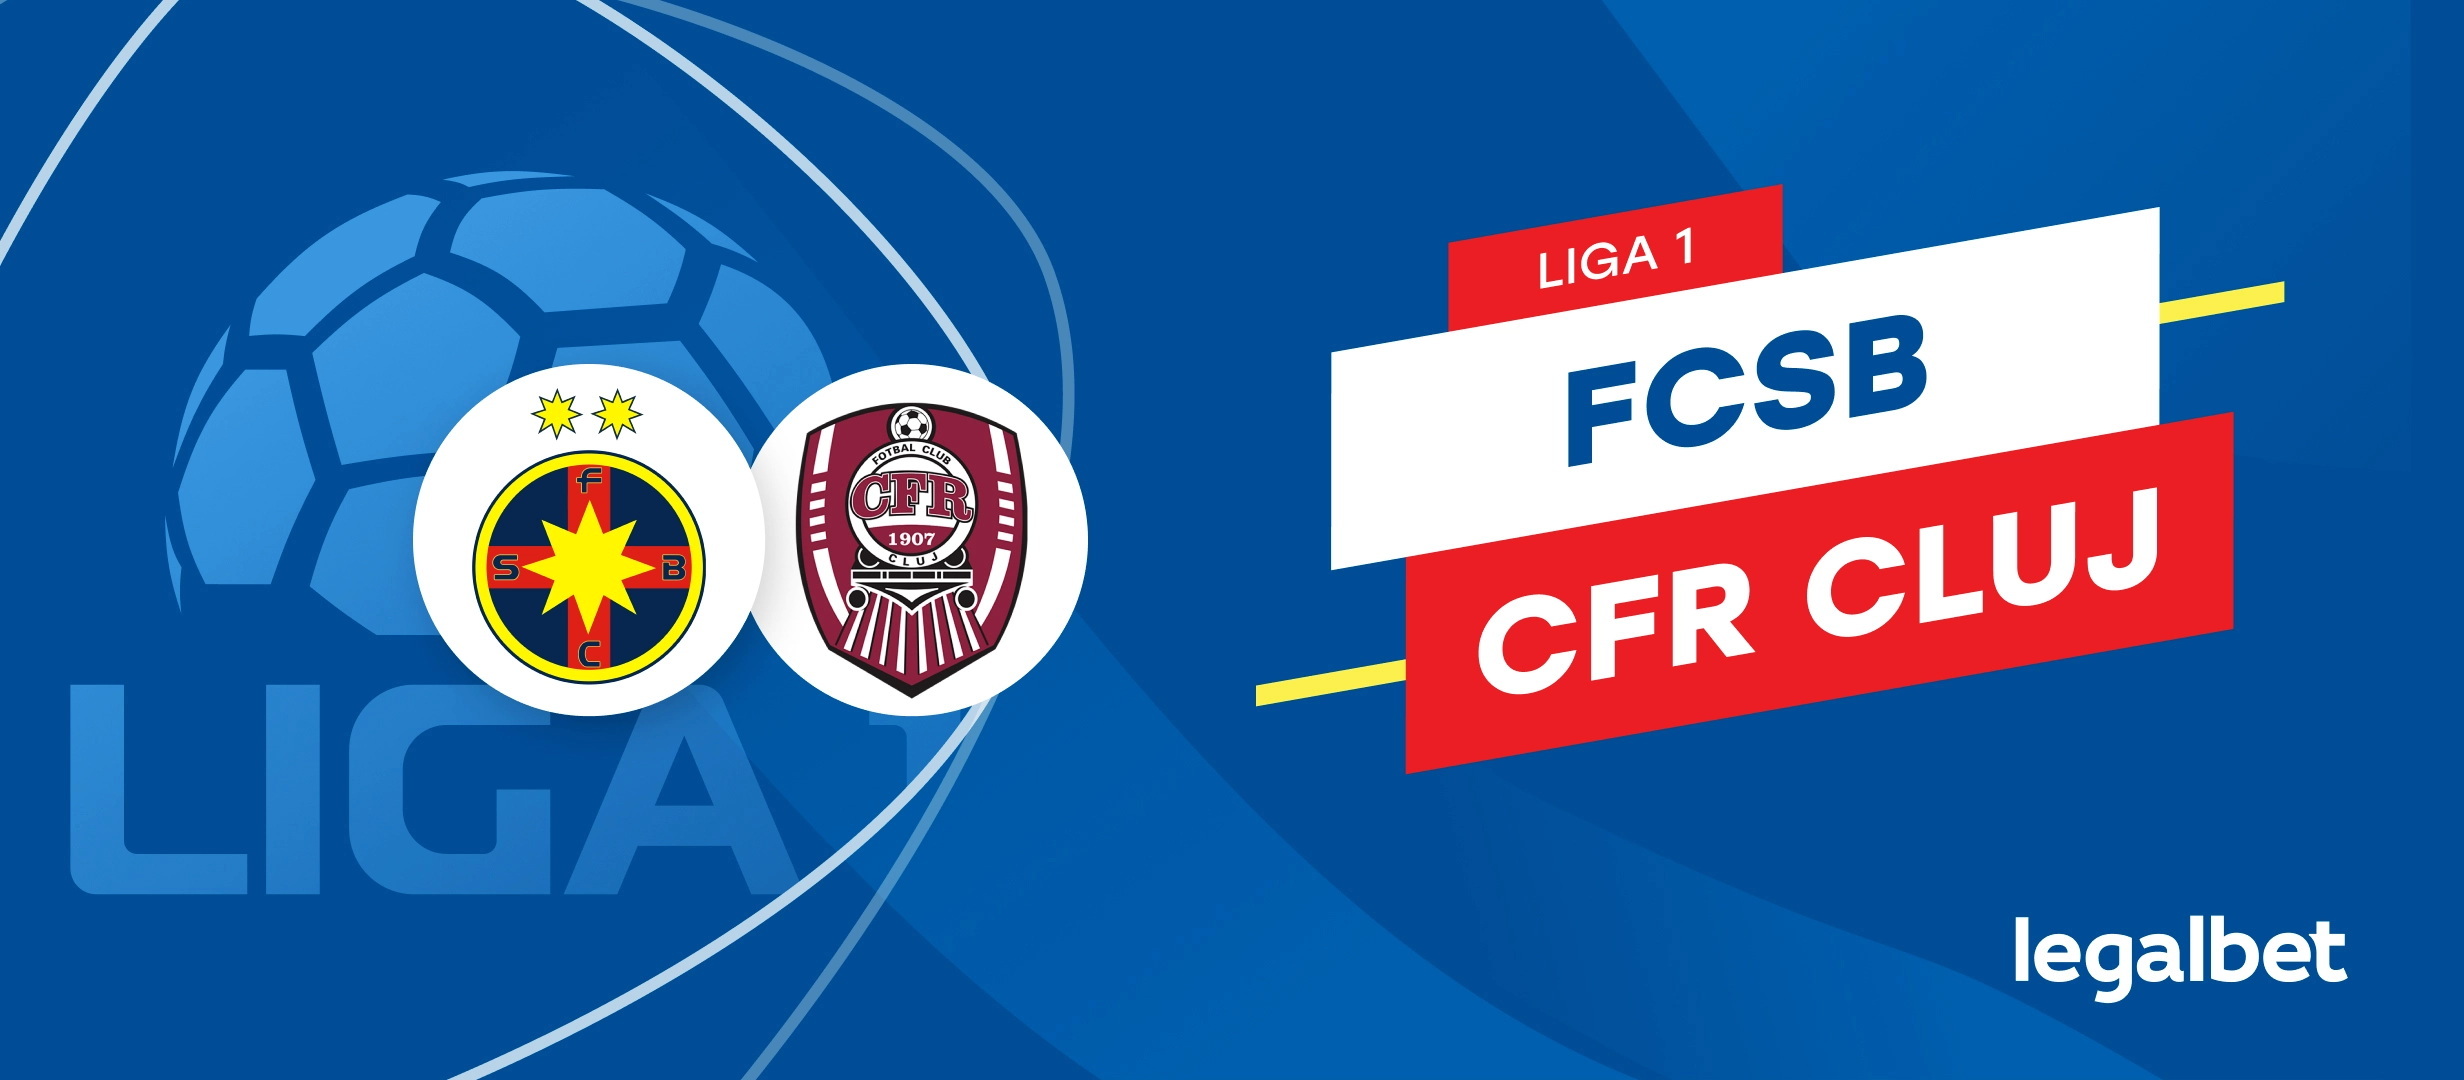 FCSB - CFR Cluj: cote la pariuri si statistici